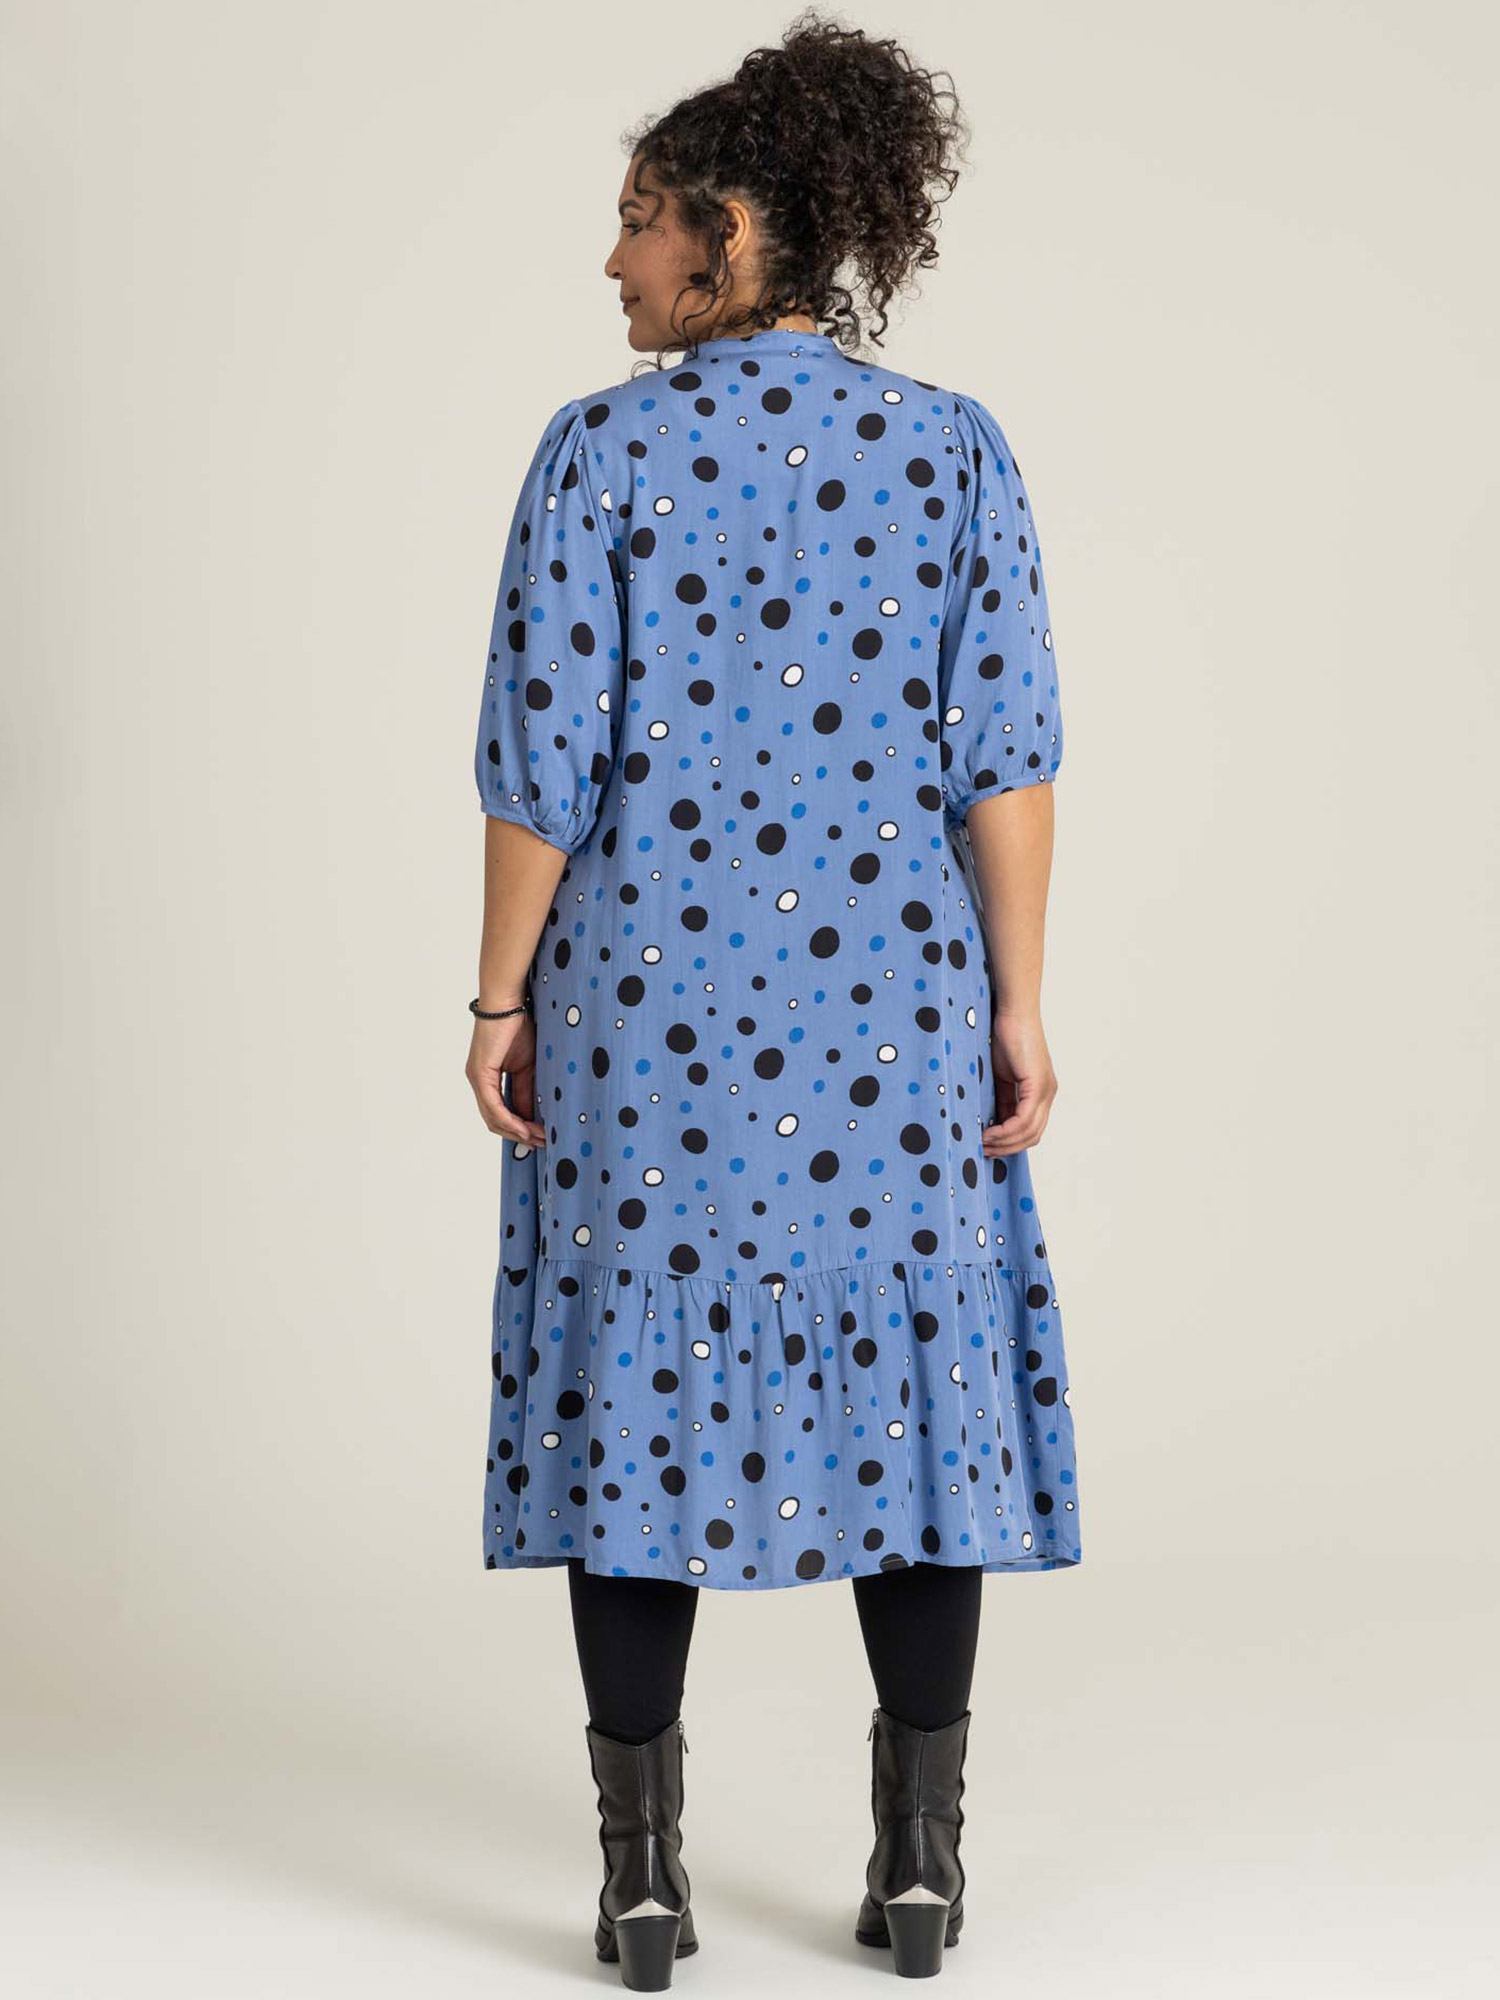 AGNETHE - Söt blå viskosklänning med prickar fra Studio